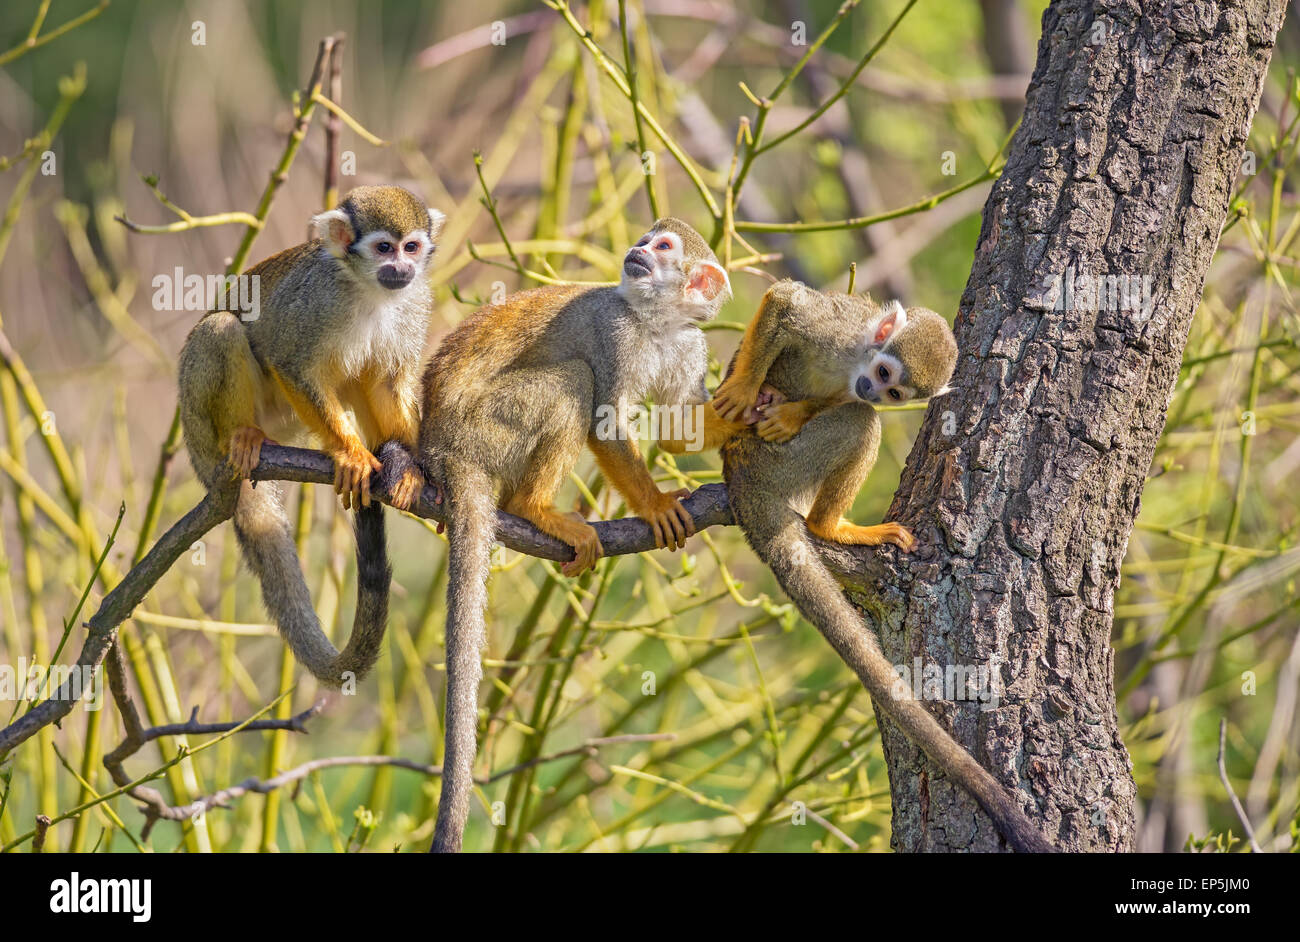 Trois singes écureuil commun (Saimiri sciureus) jouant sur une branche d'arbre Banque D'Images